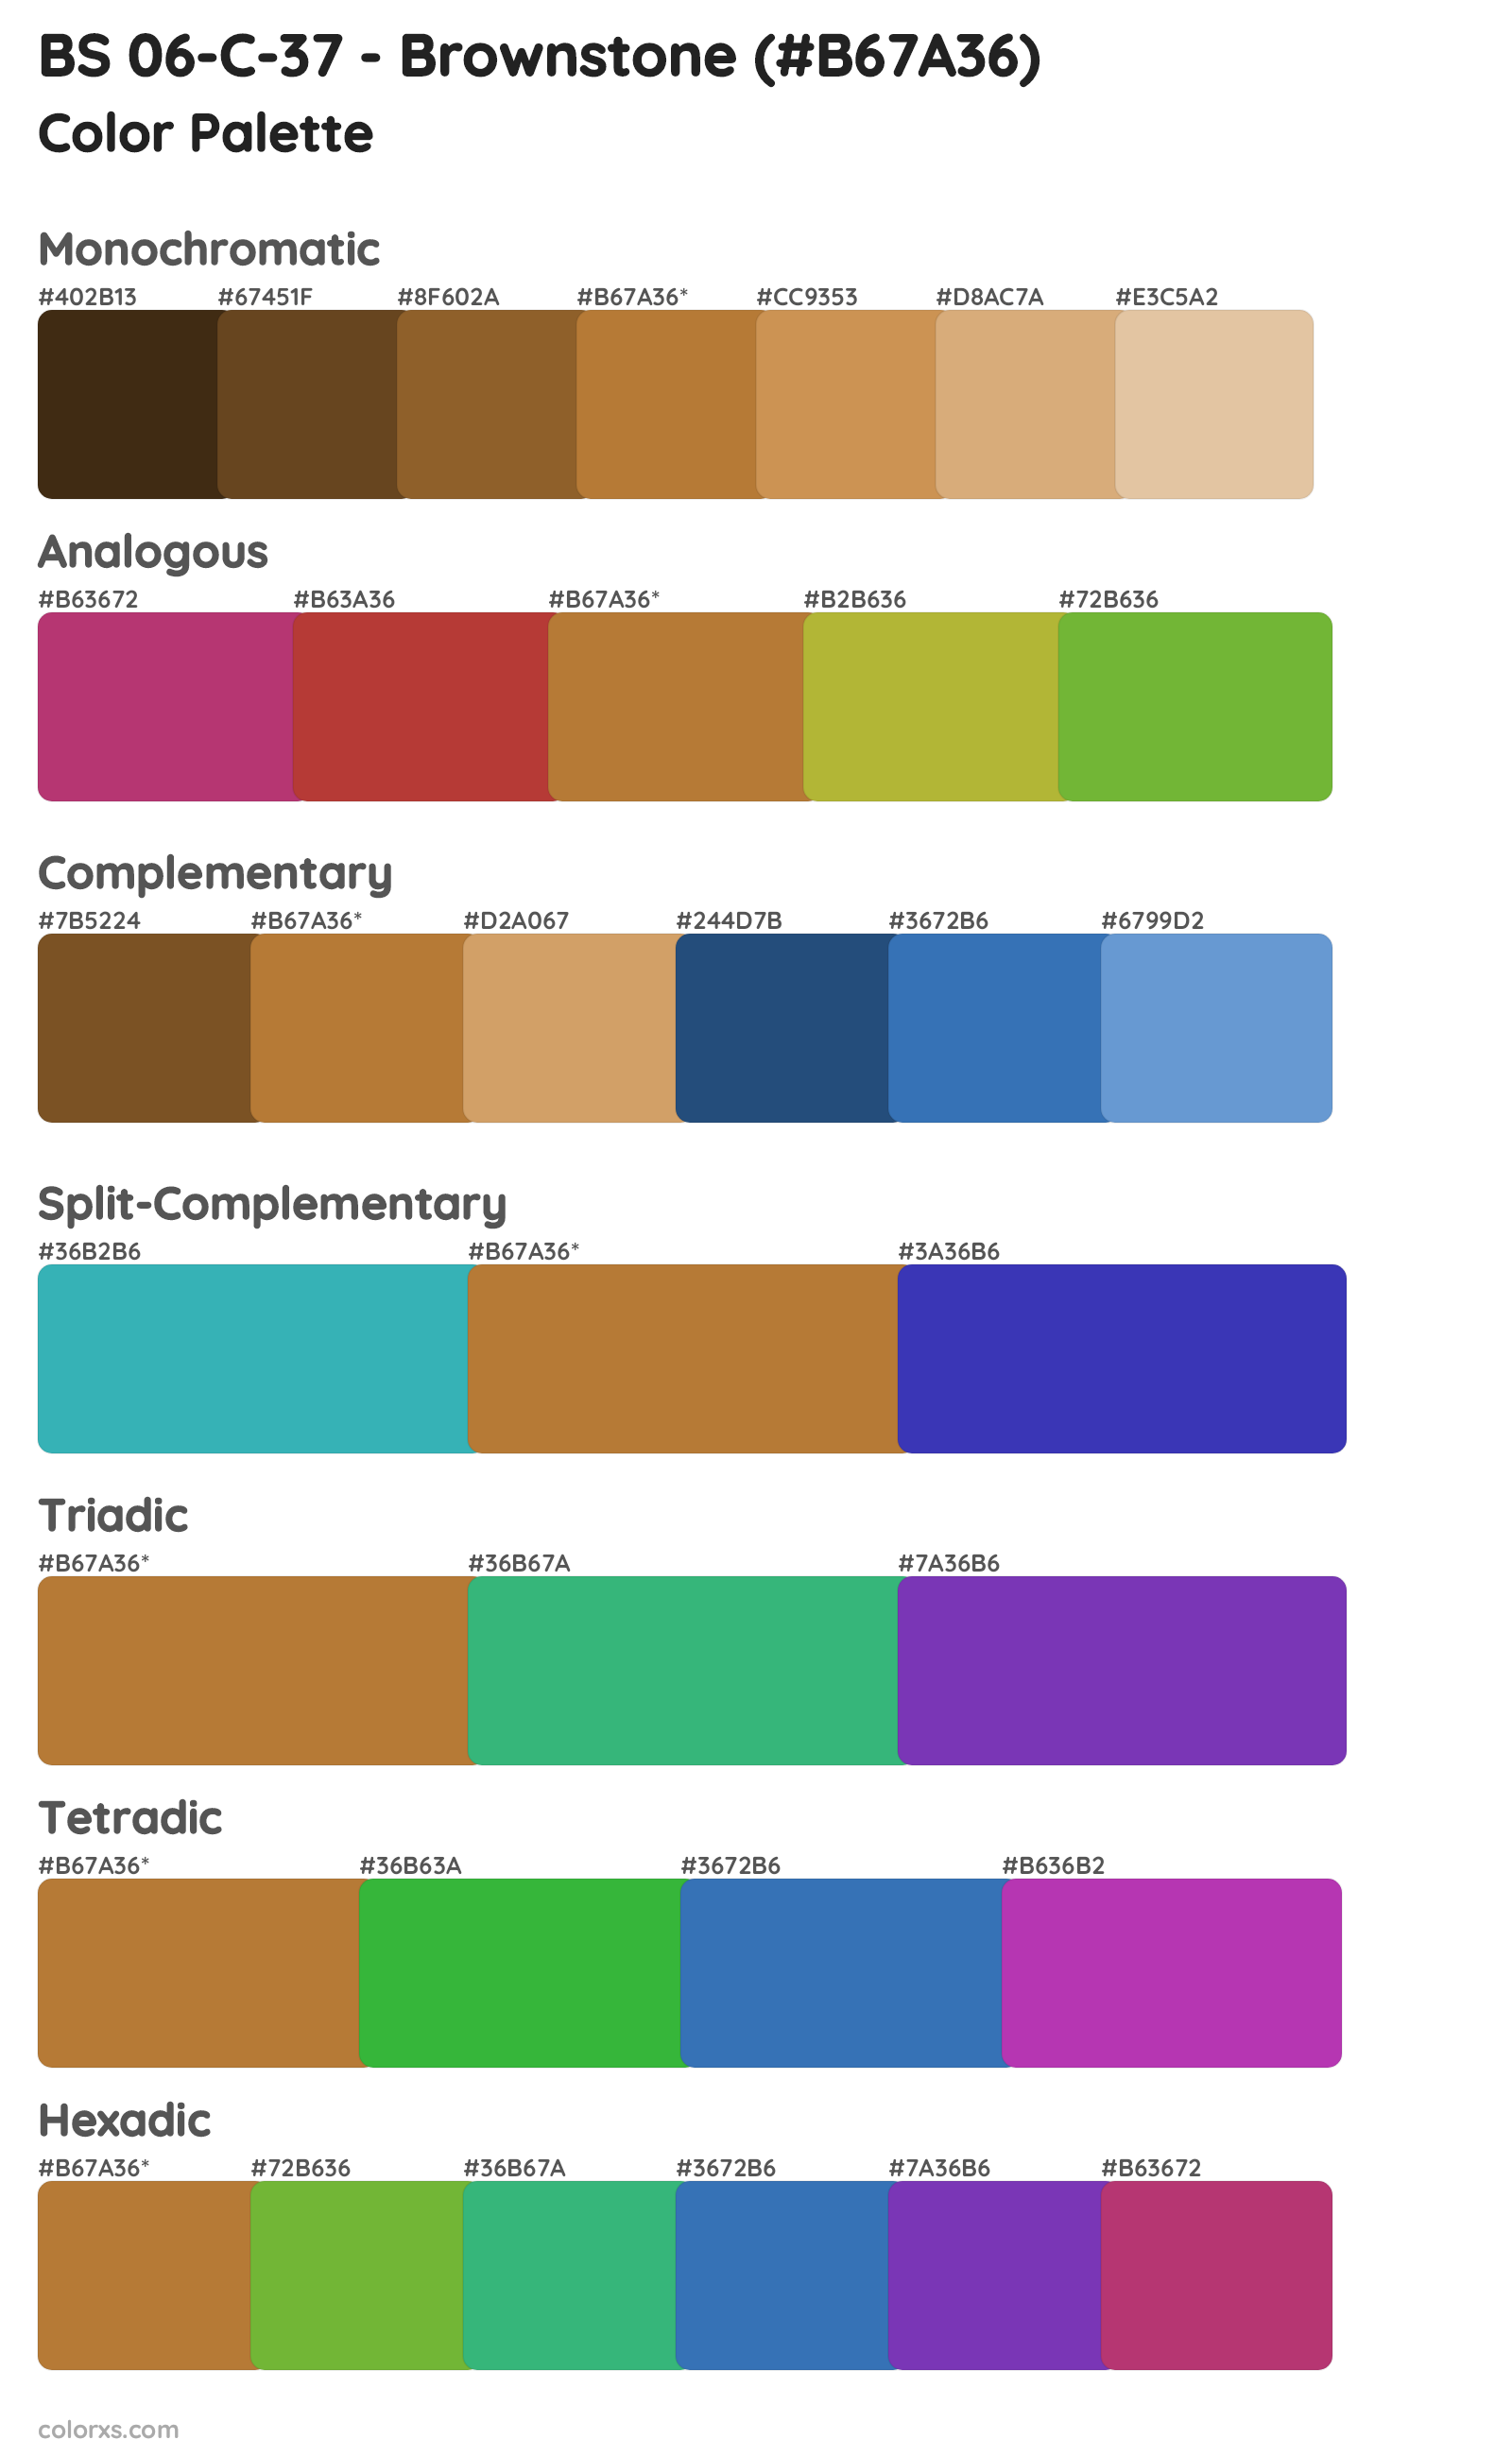 BS 06-C-37 - Brownstone Color Scheme Palettes